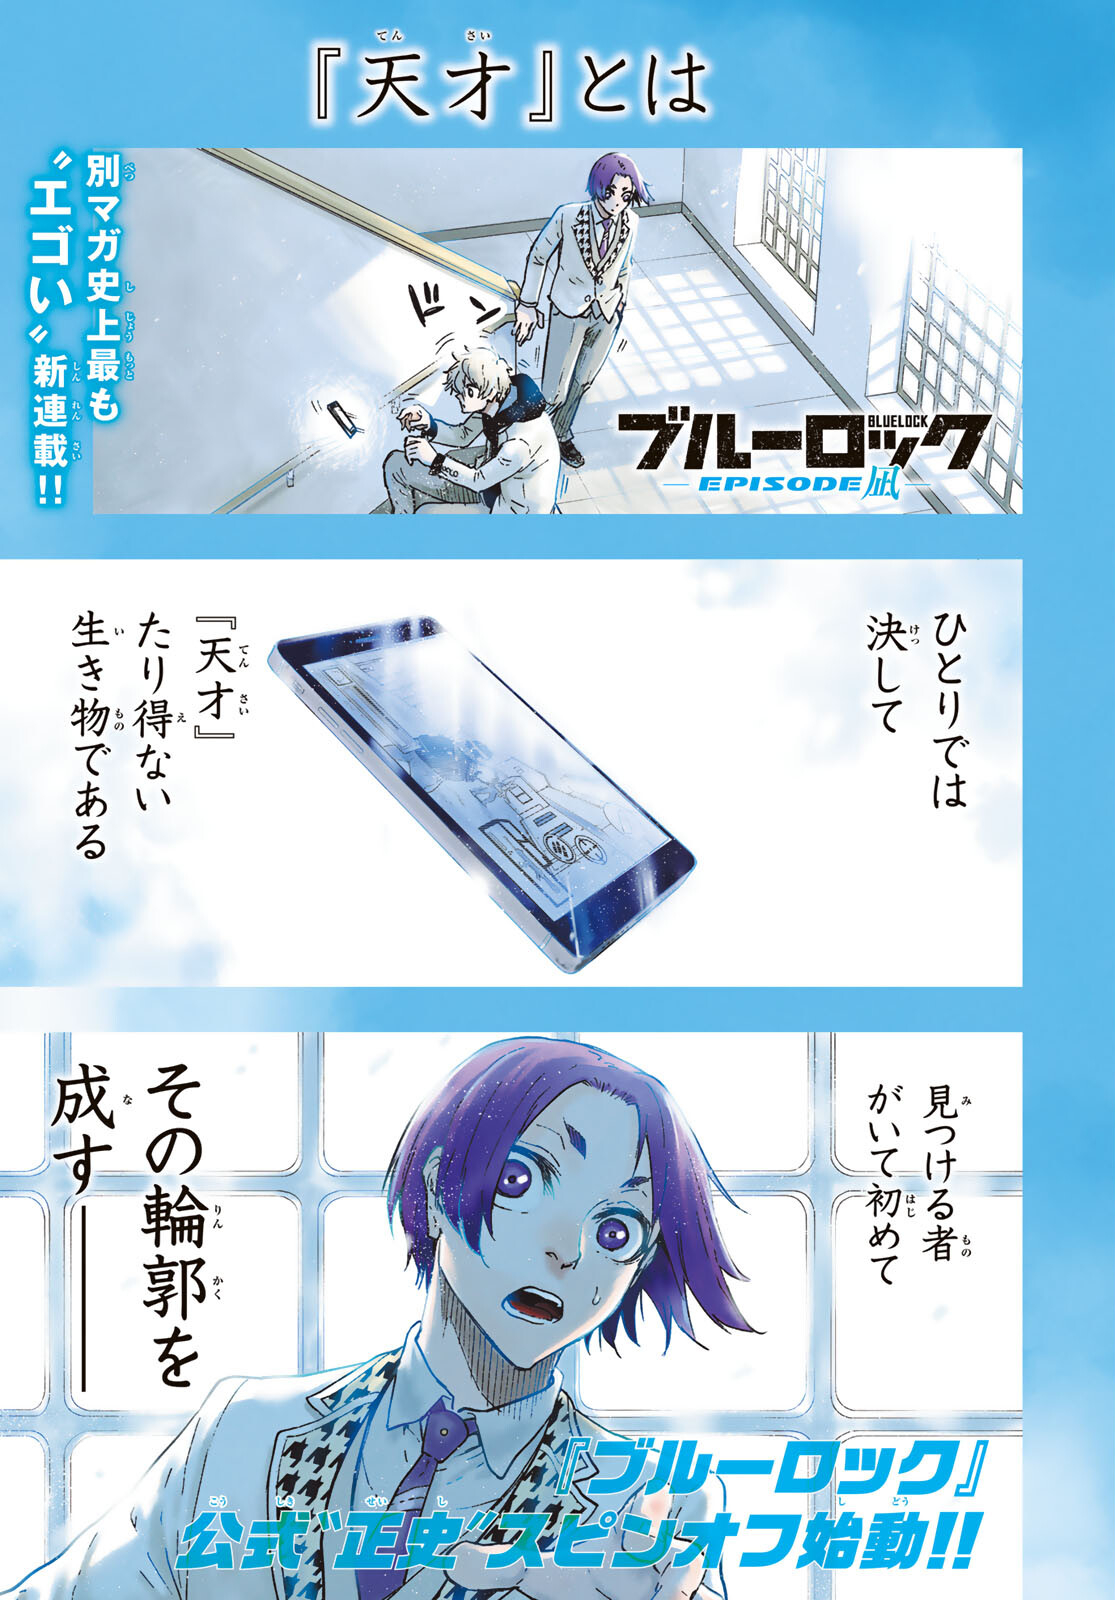 Blue Lock Episode Nagi Vol.1 manga Japanese version